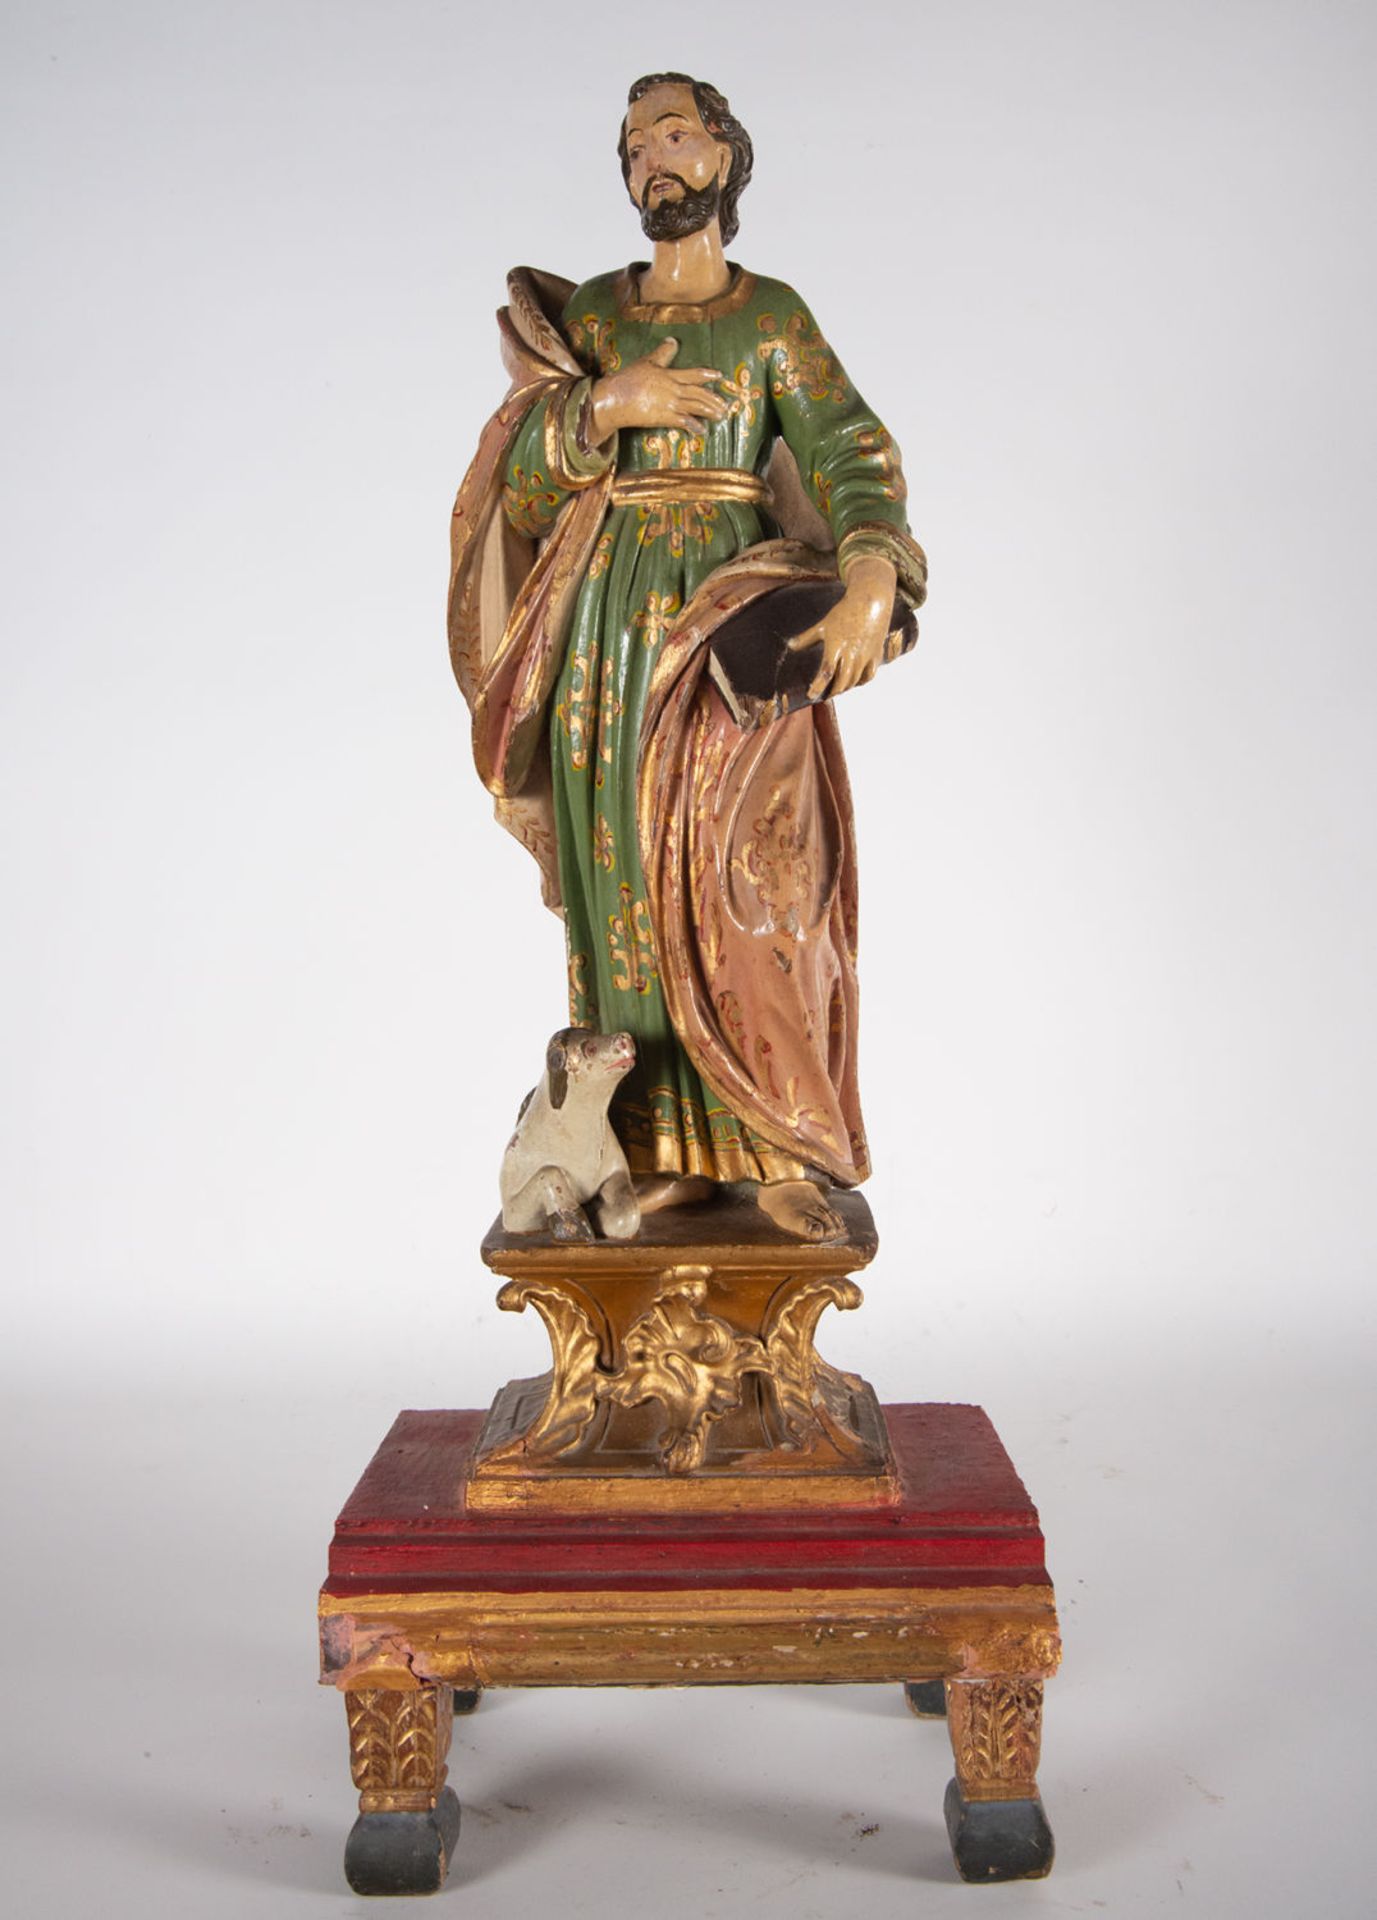 Saint Matthew the Evangelist, 18th century